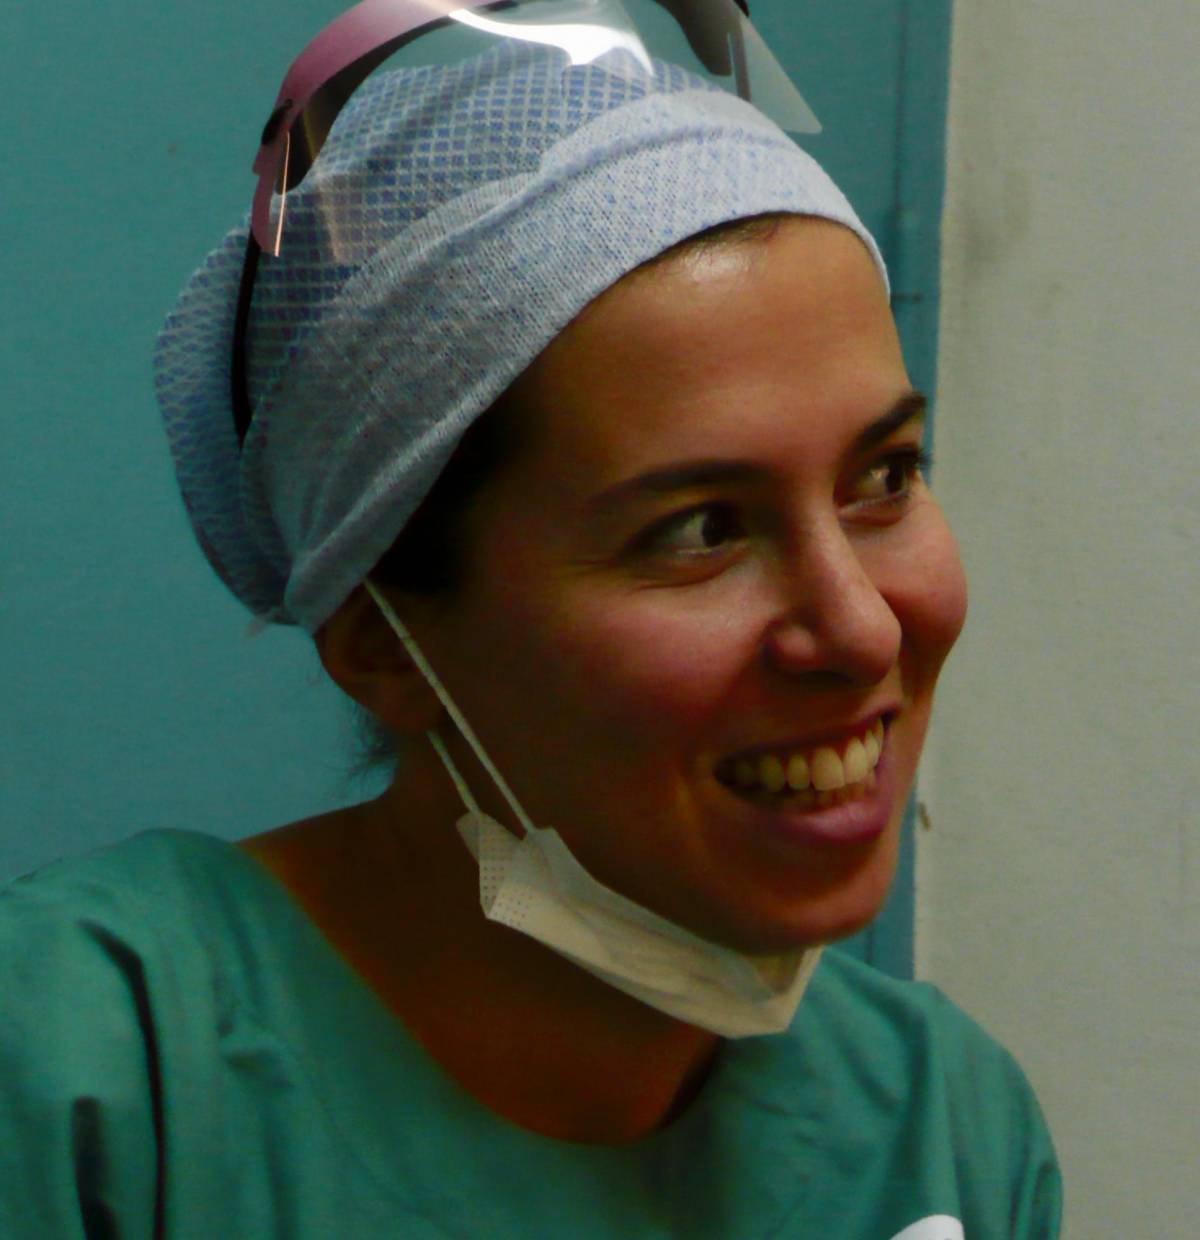 Chirurgien esthétique femme à Grenoble – Rhône Alpes | Dr Cynthia Hamou - 